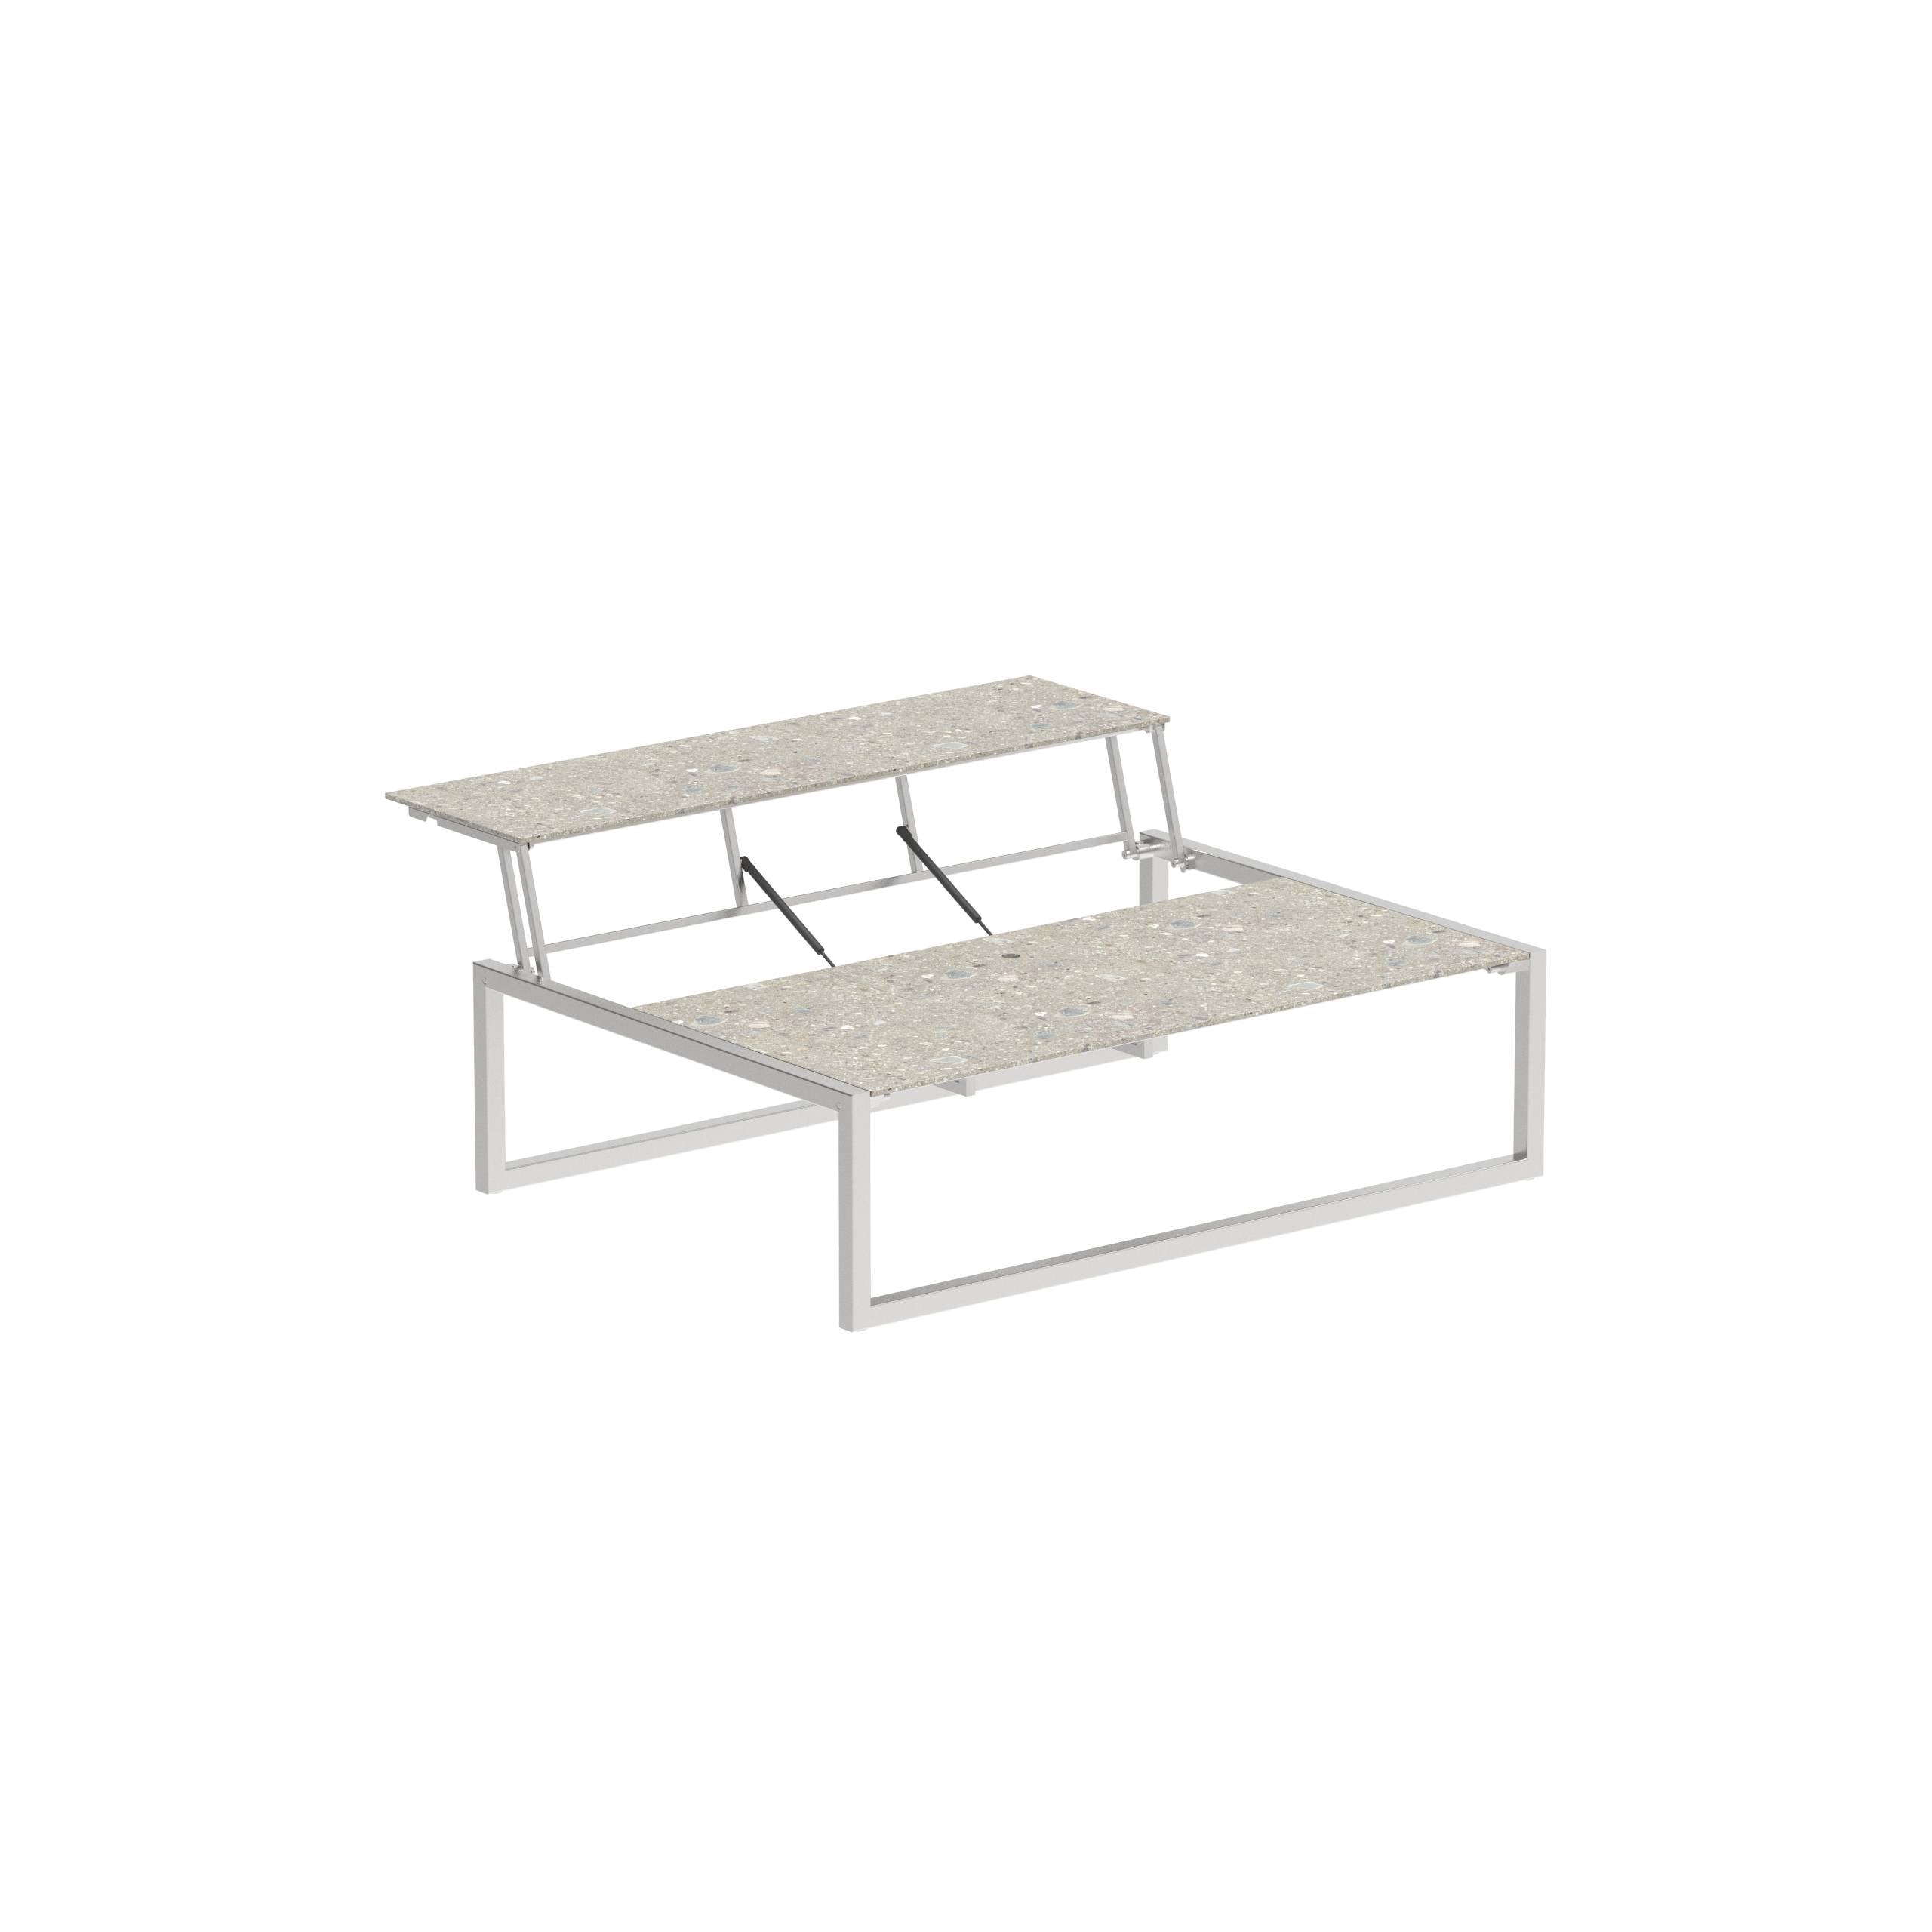 Ninix Lounge Table 150t Ss - Ceramic Ceppo Dolomitica